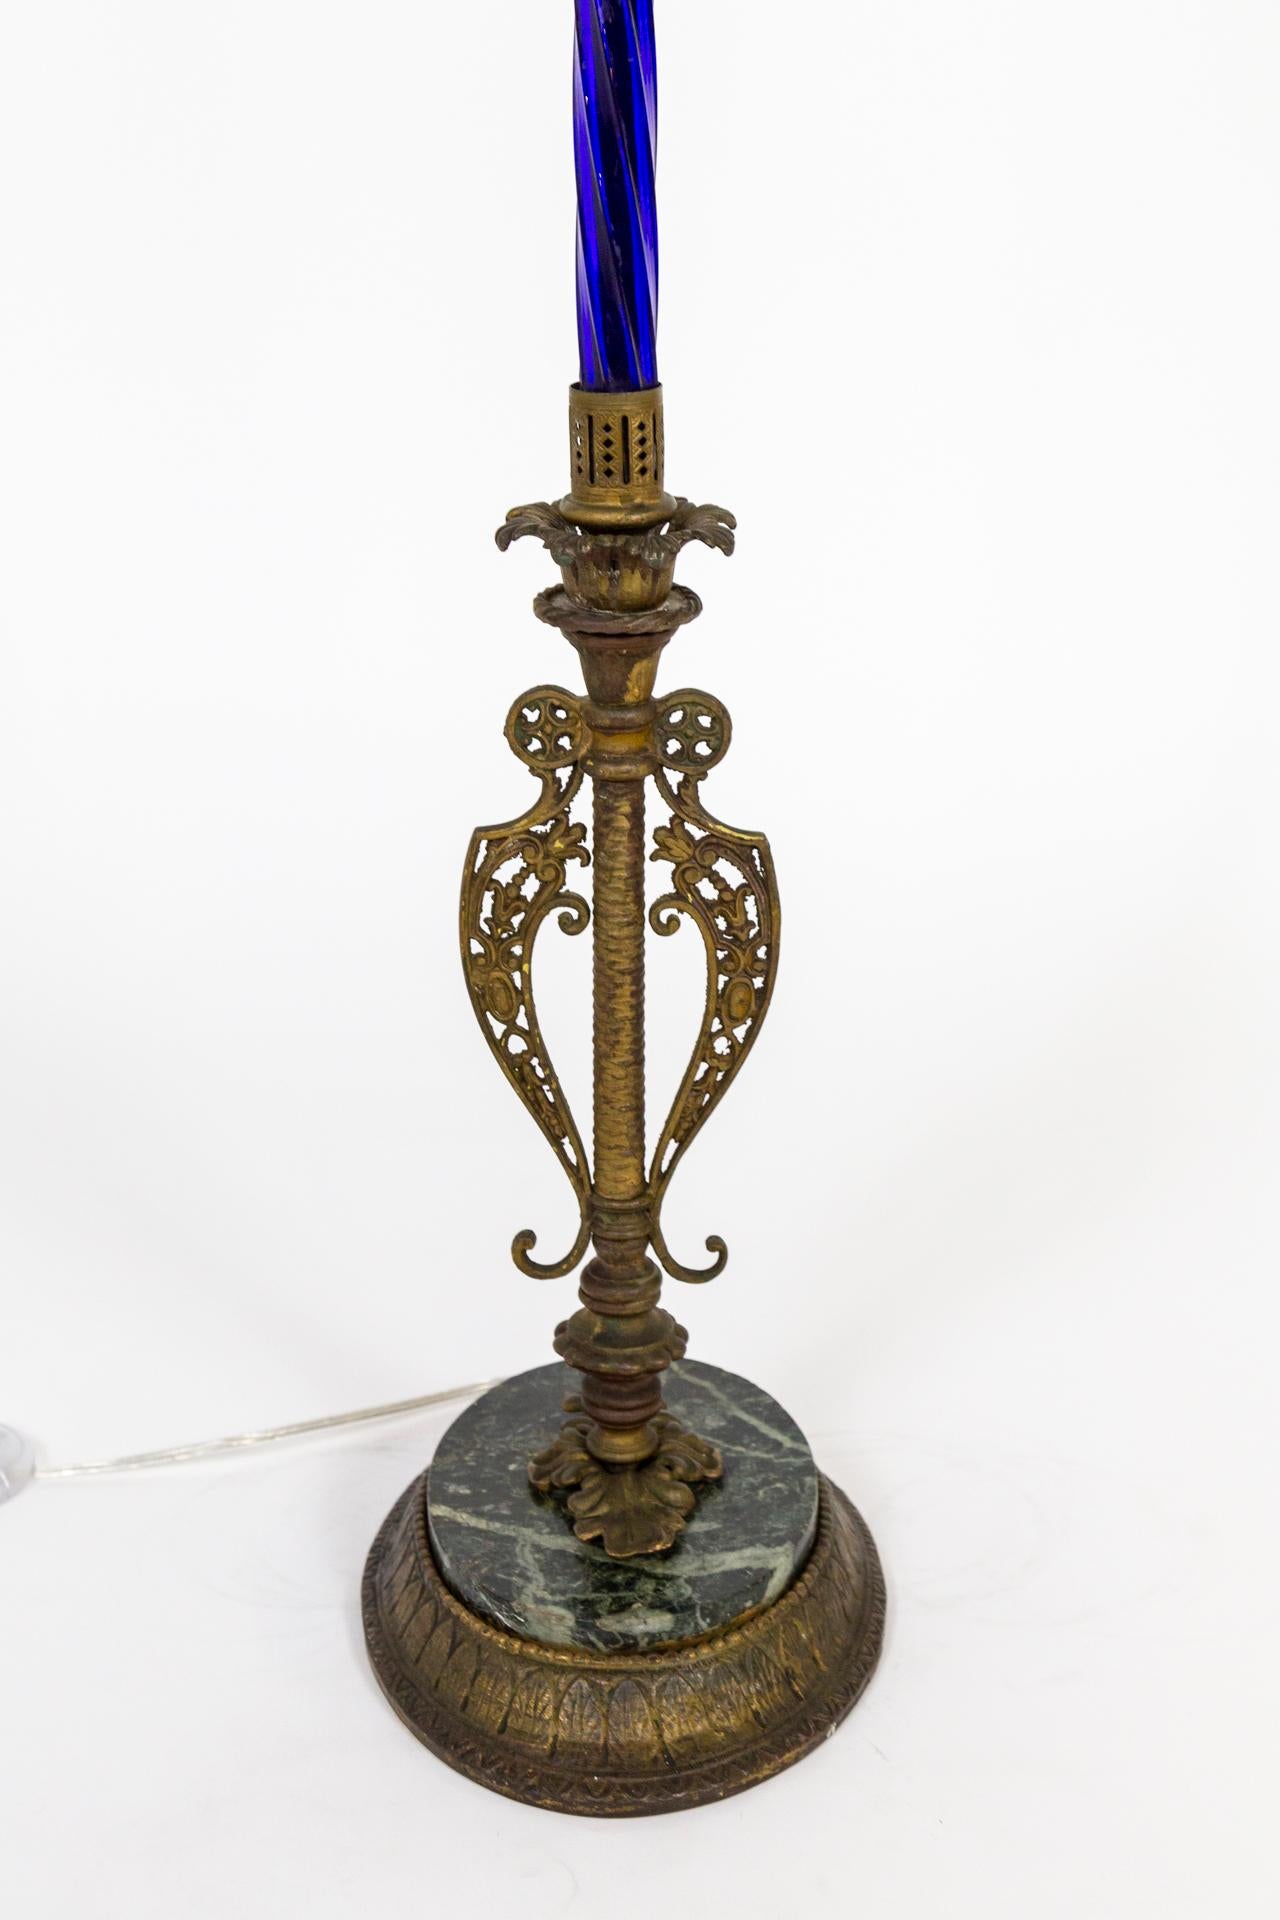 Stehlampe im viktorianischen Stil, anglo-indisch inspiriert, auf einem ovalen Sockel aus Messing- und Marmorguss.
Der Hauptkörper ist aus auffälligem, 24 Zoll langem, gedrehtem, kobaltblauem Glas gefertigt, das in durchbrochene Messingkappen endet.